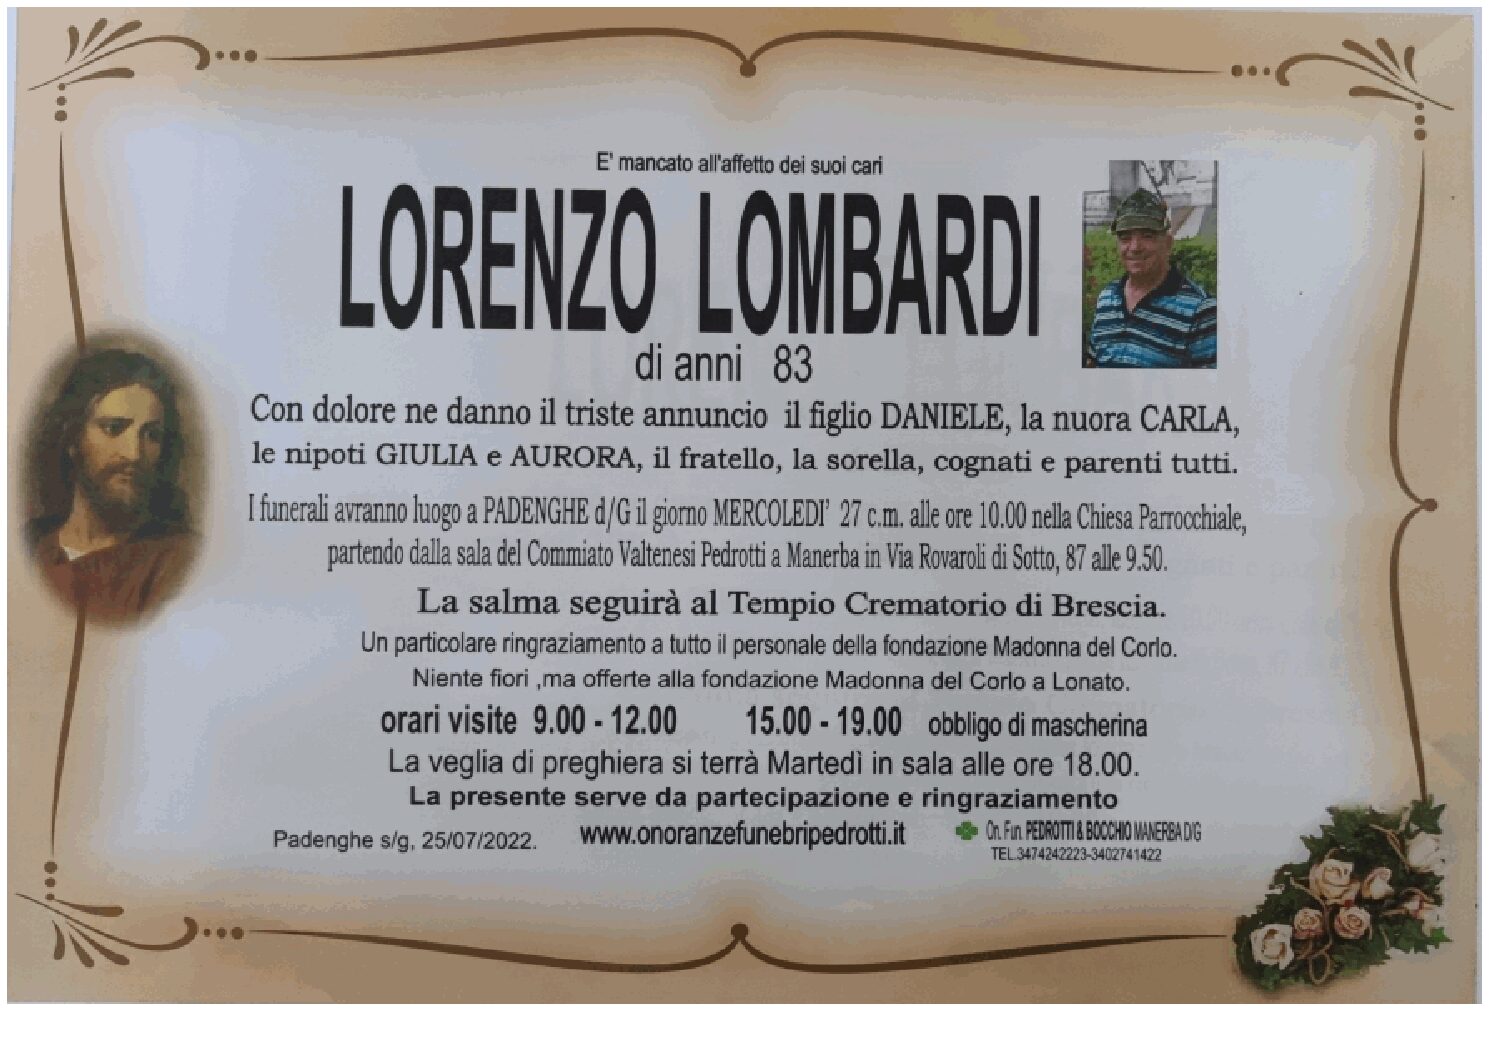 Al momento stai visualizzando Lombardi Lorenzo